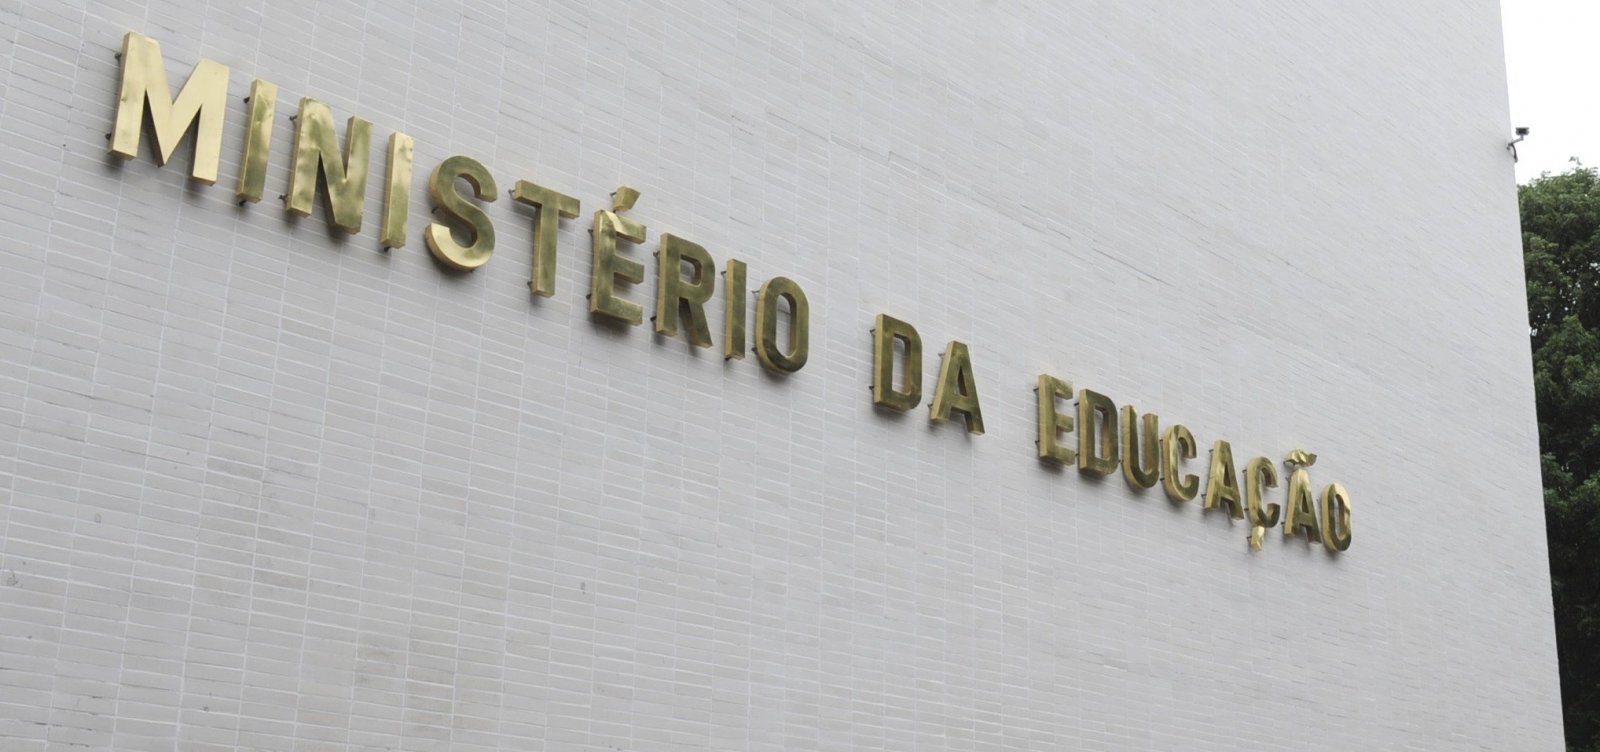 Após repercussão, governo Bolsonaro recua e anula mudança em edital de compra de livros